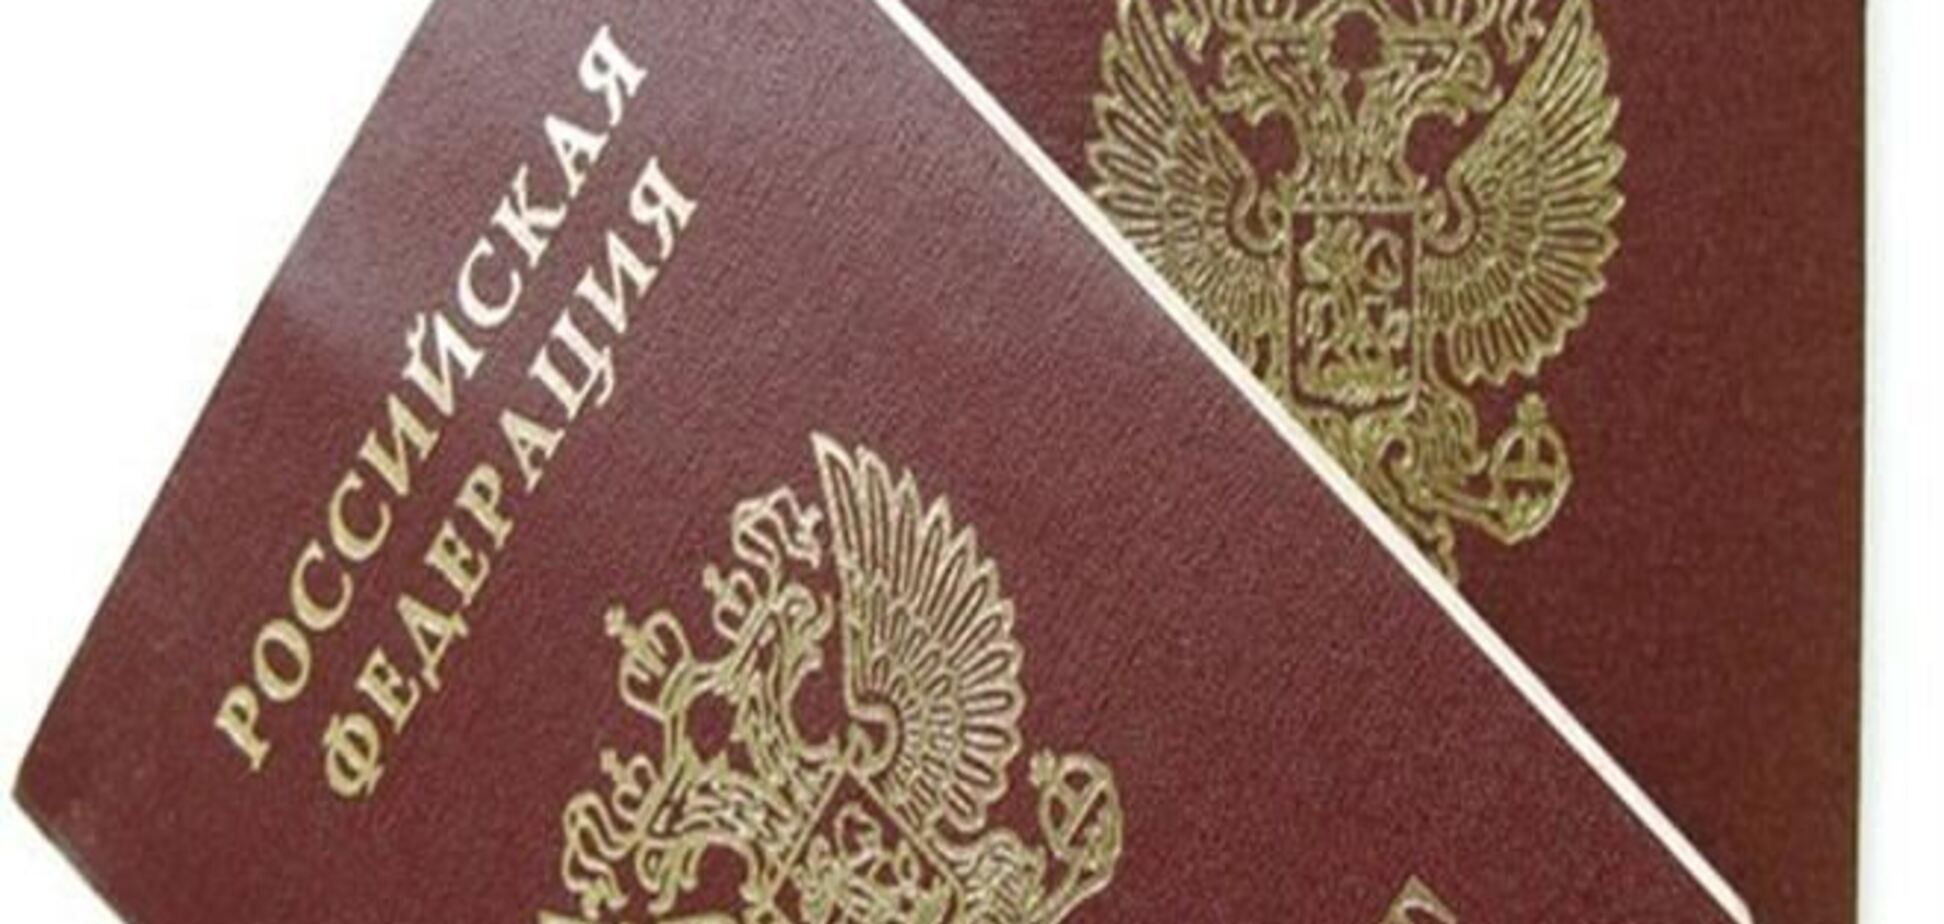 Російська влада стримують процес відмови кримчан від російського громадянства